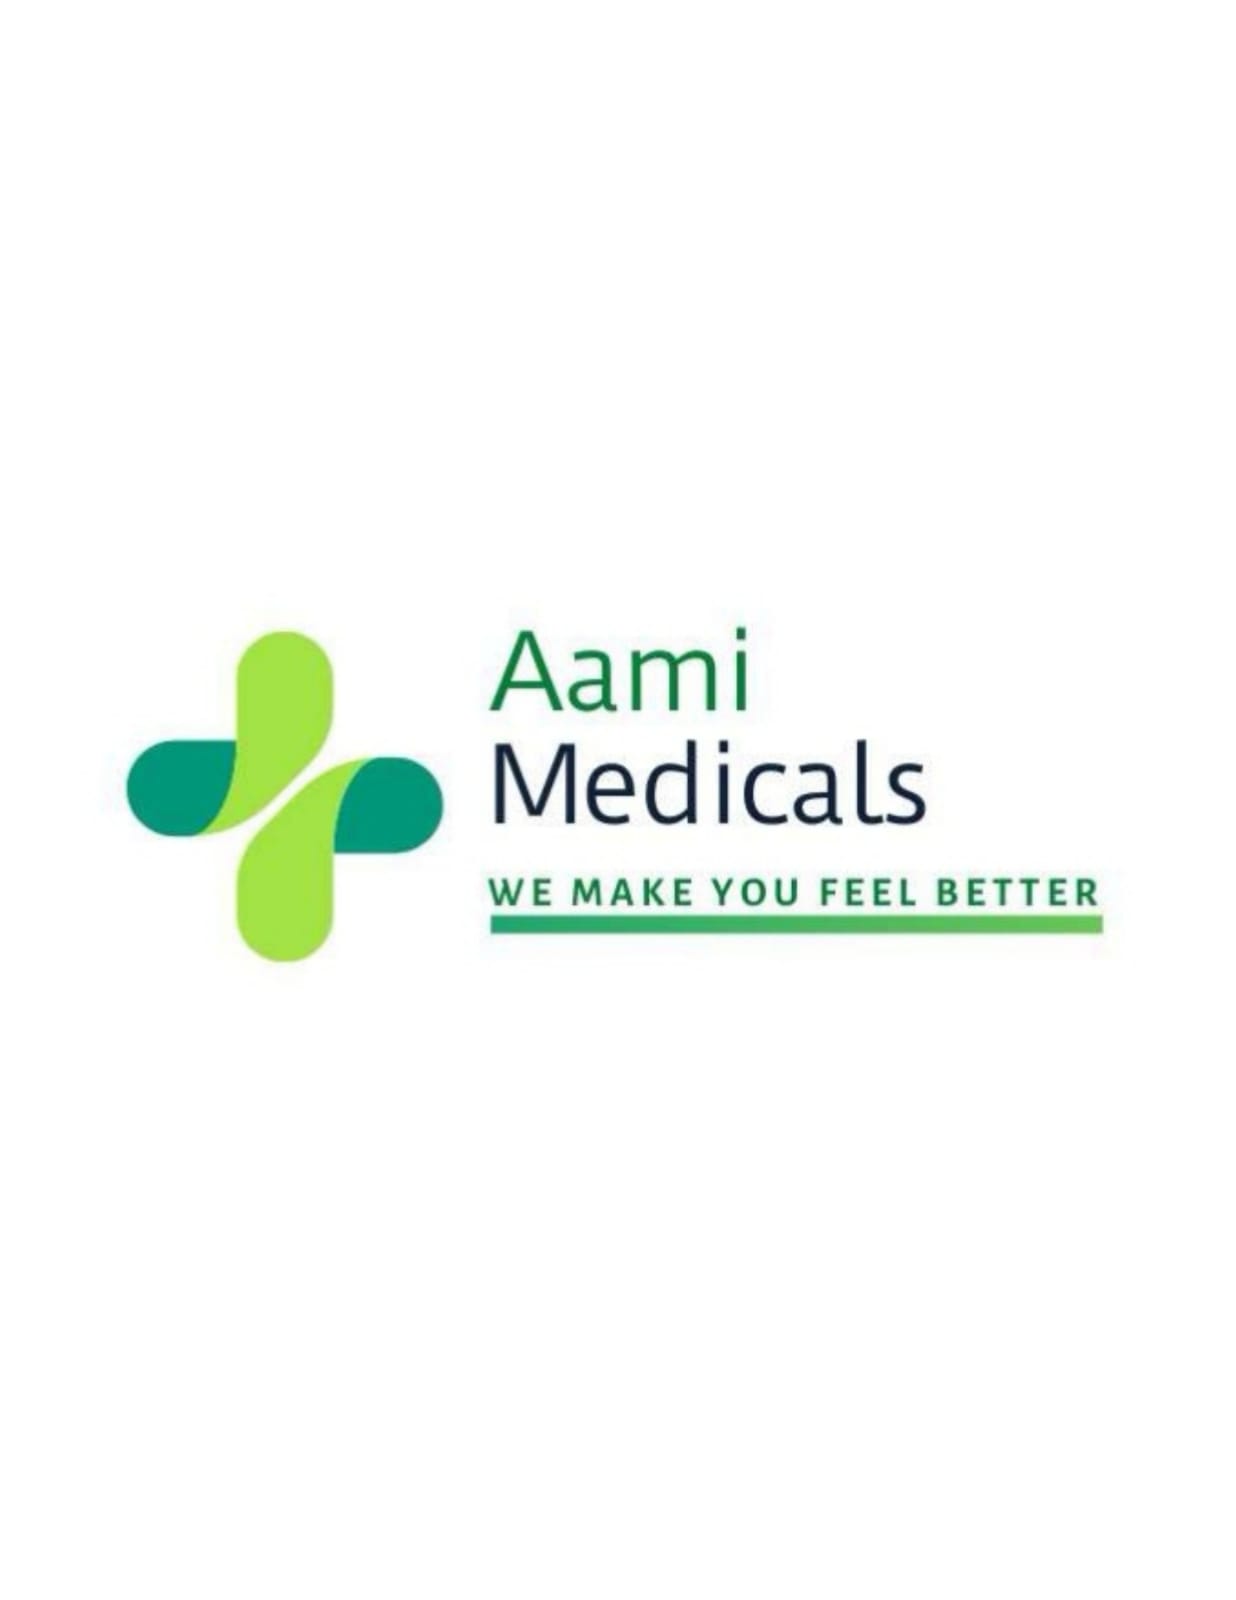 AAMI Medicals